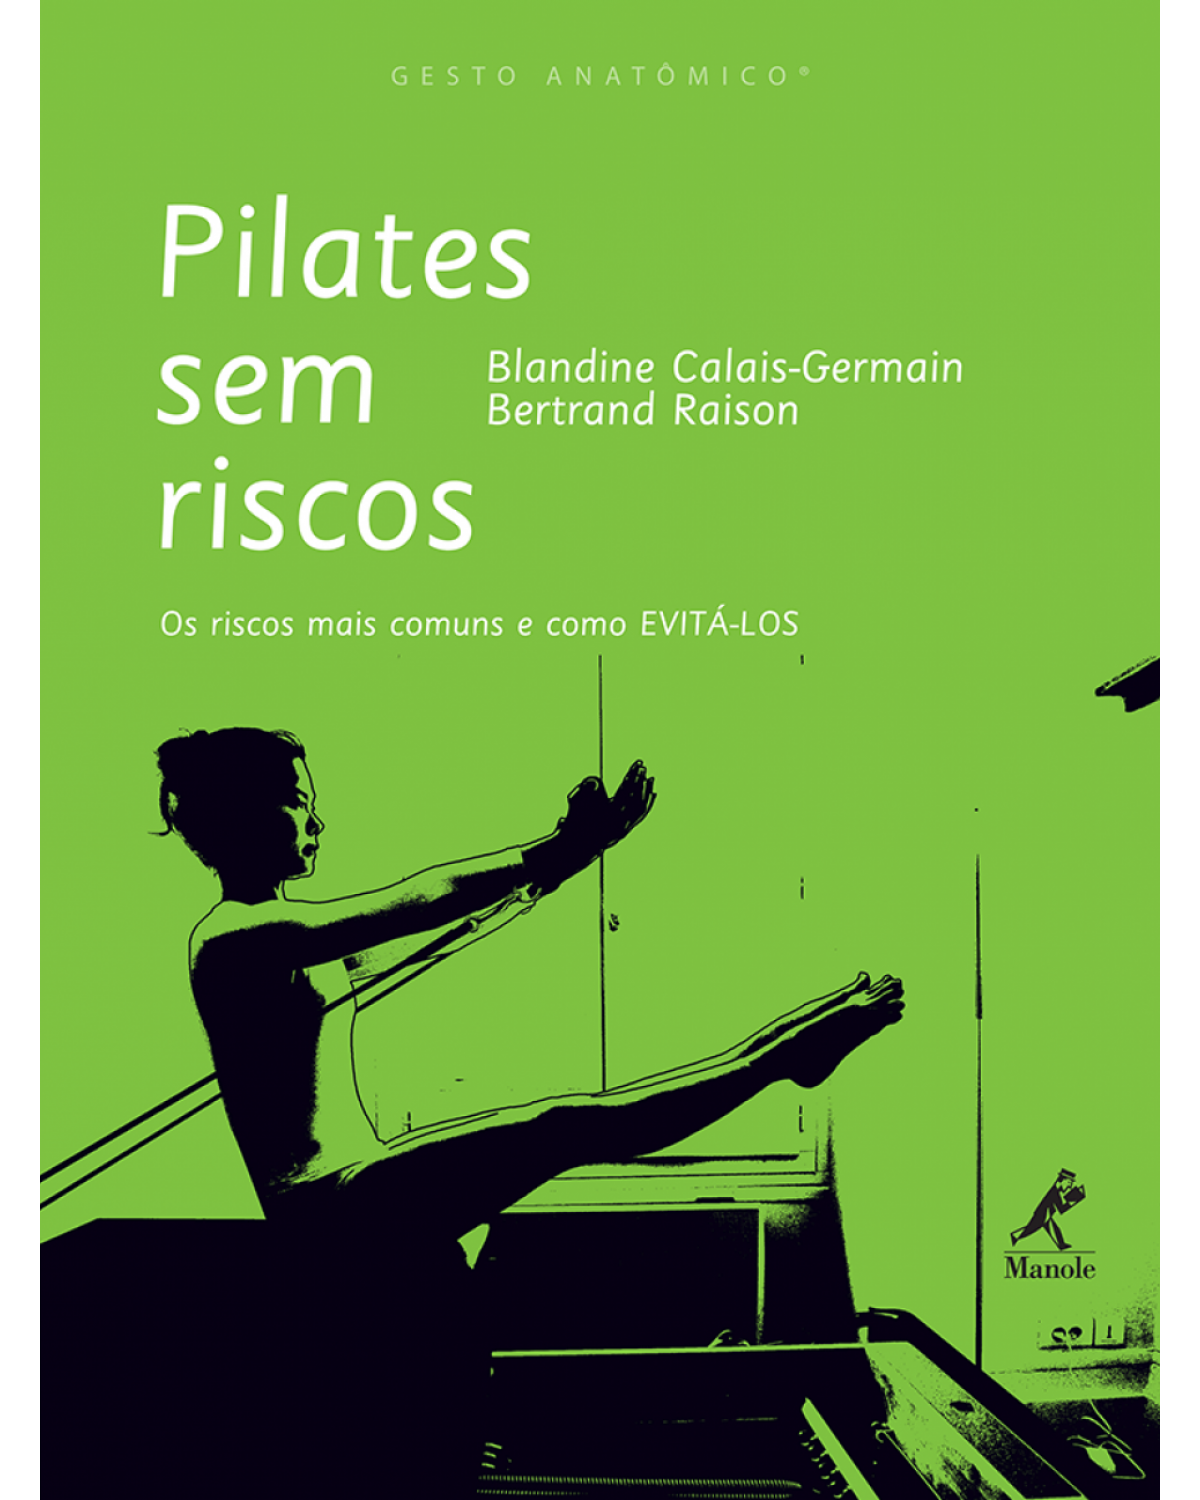 Pilates sem riscos - Os riscos mais comuns e como evitá-los - 1ª Edição | 2012